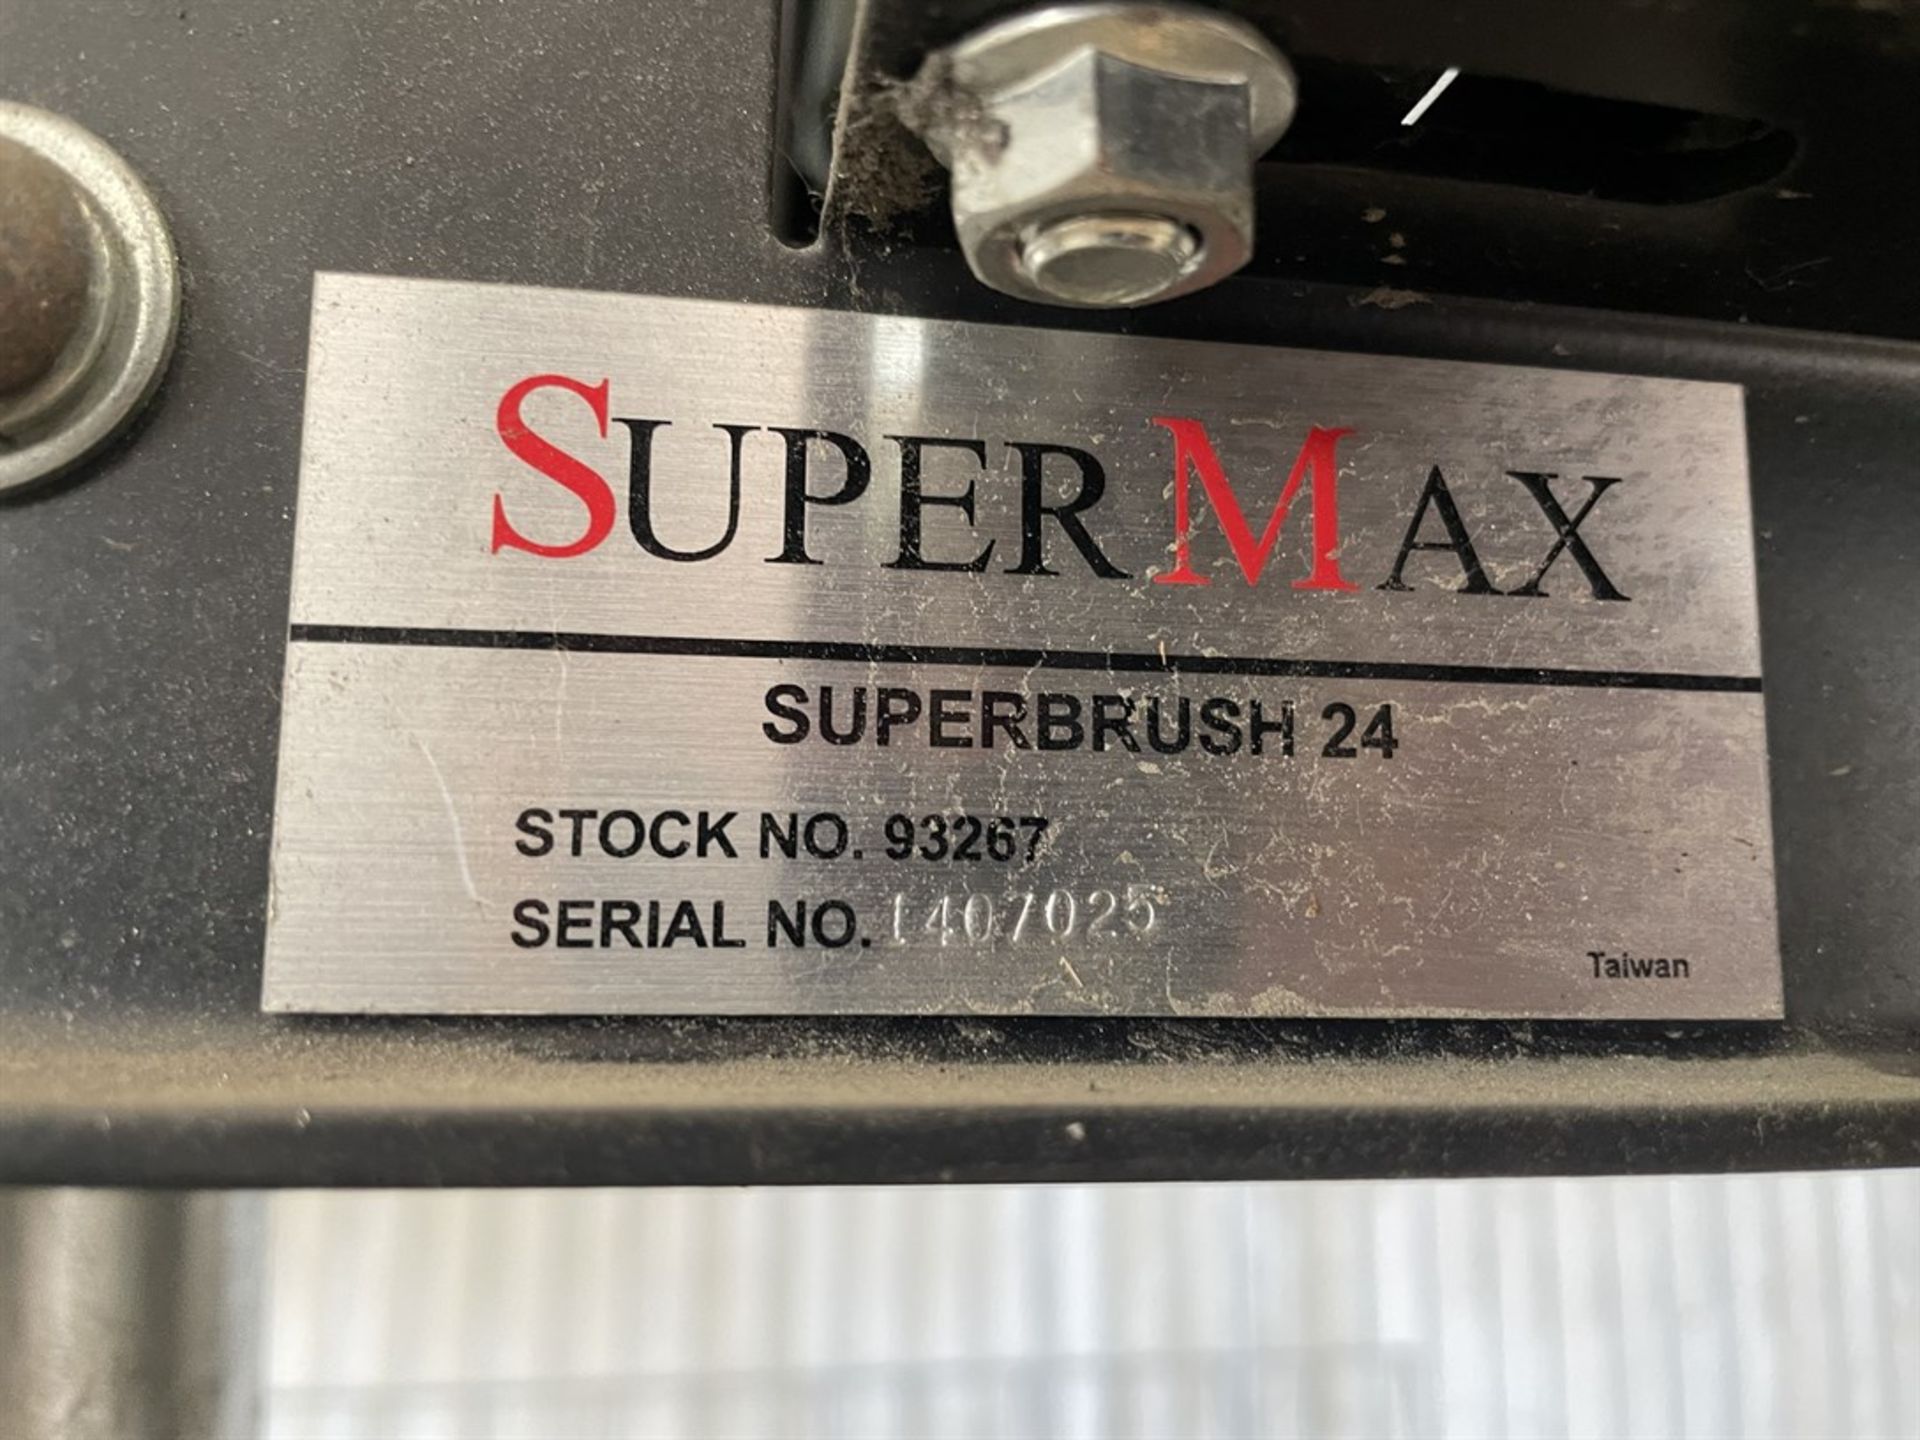 SUPERMAX SuperBrush 24 93267 Brush Machine - Image 2 of 2